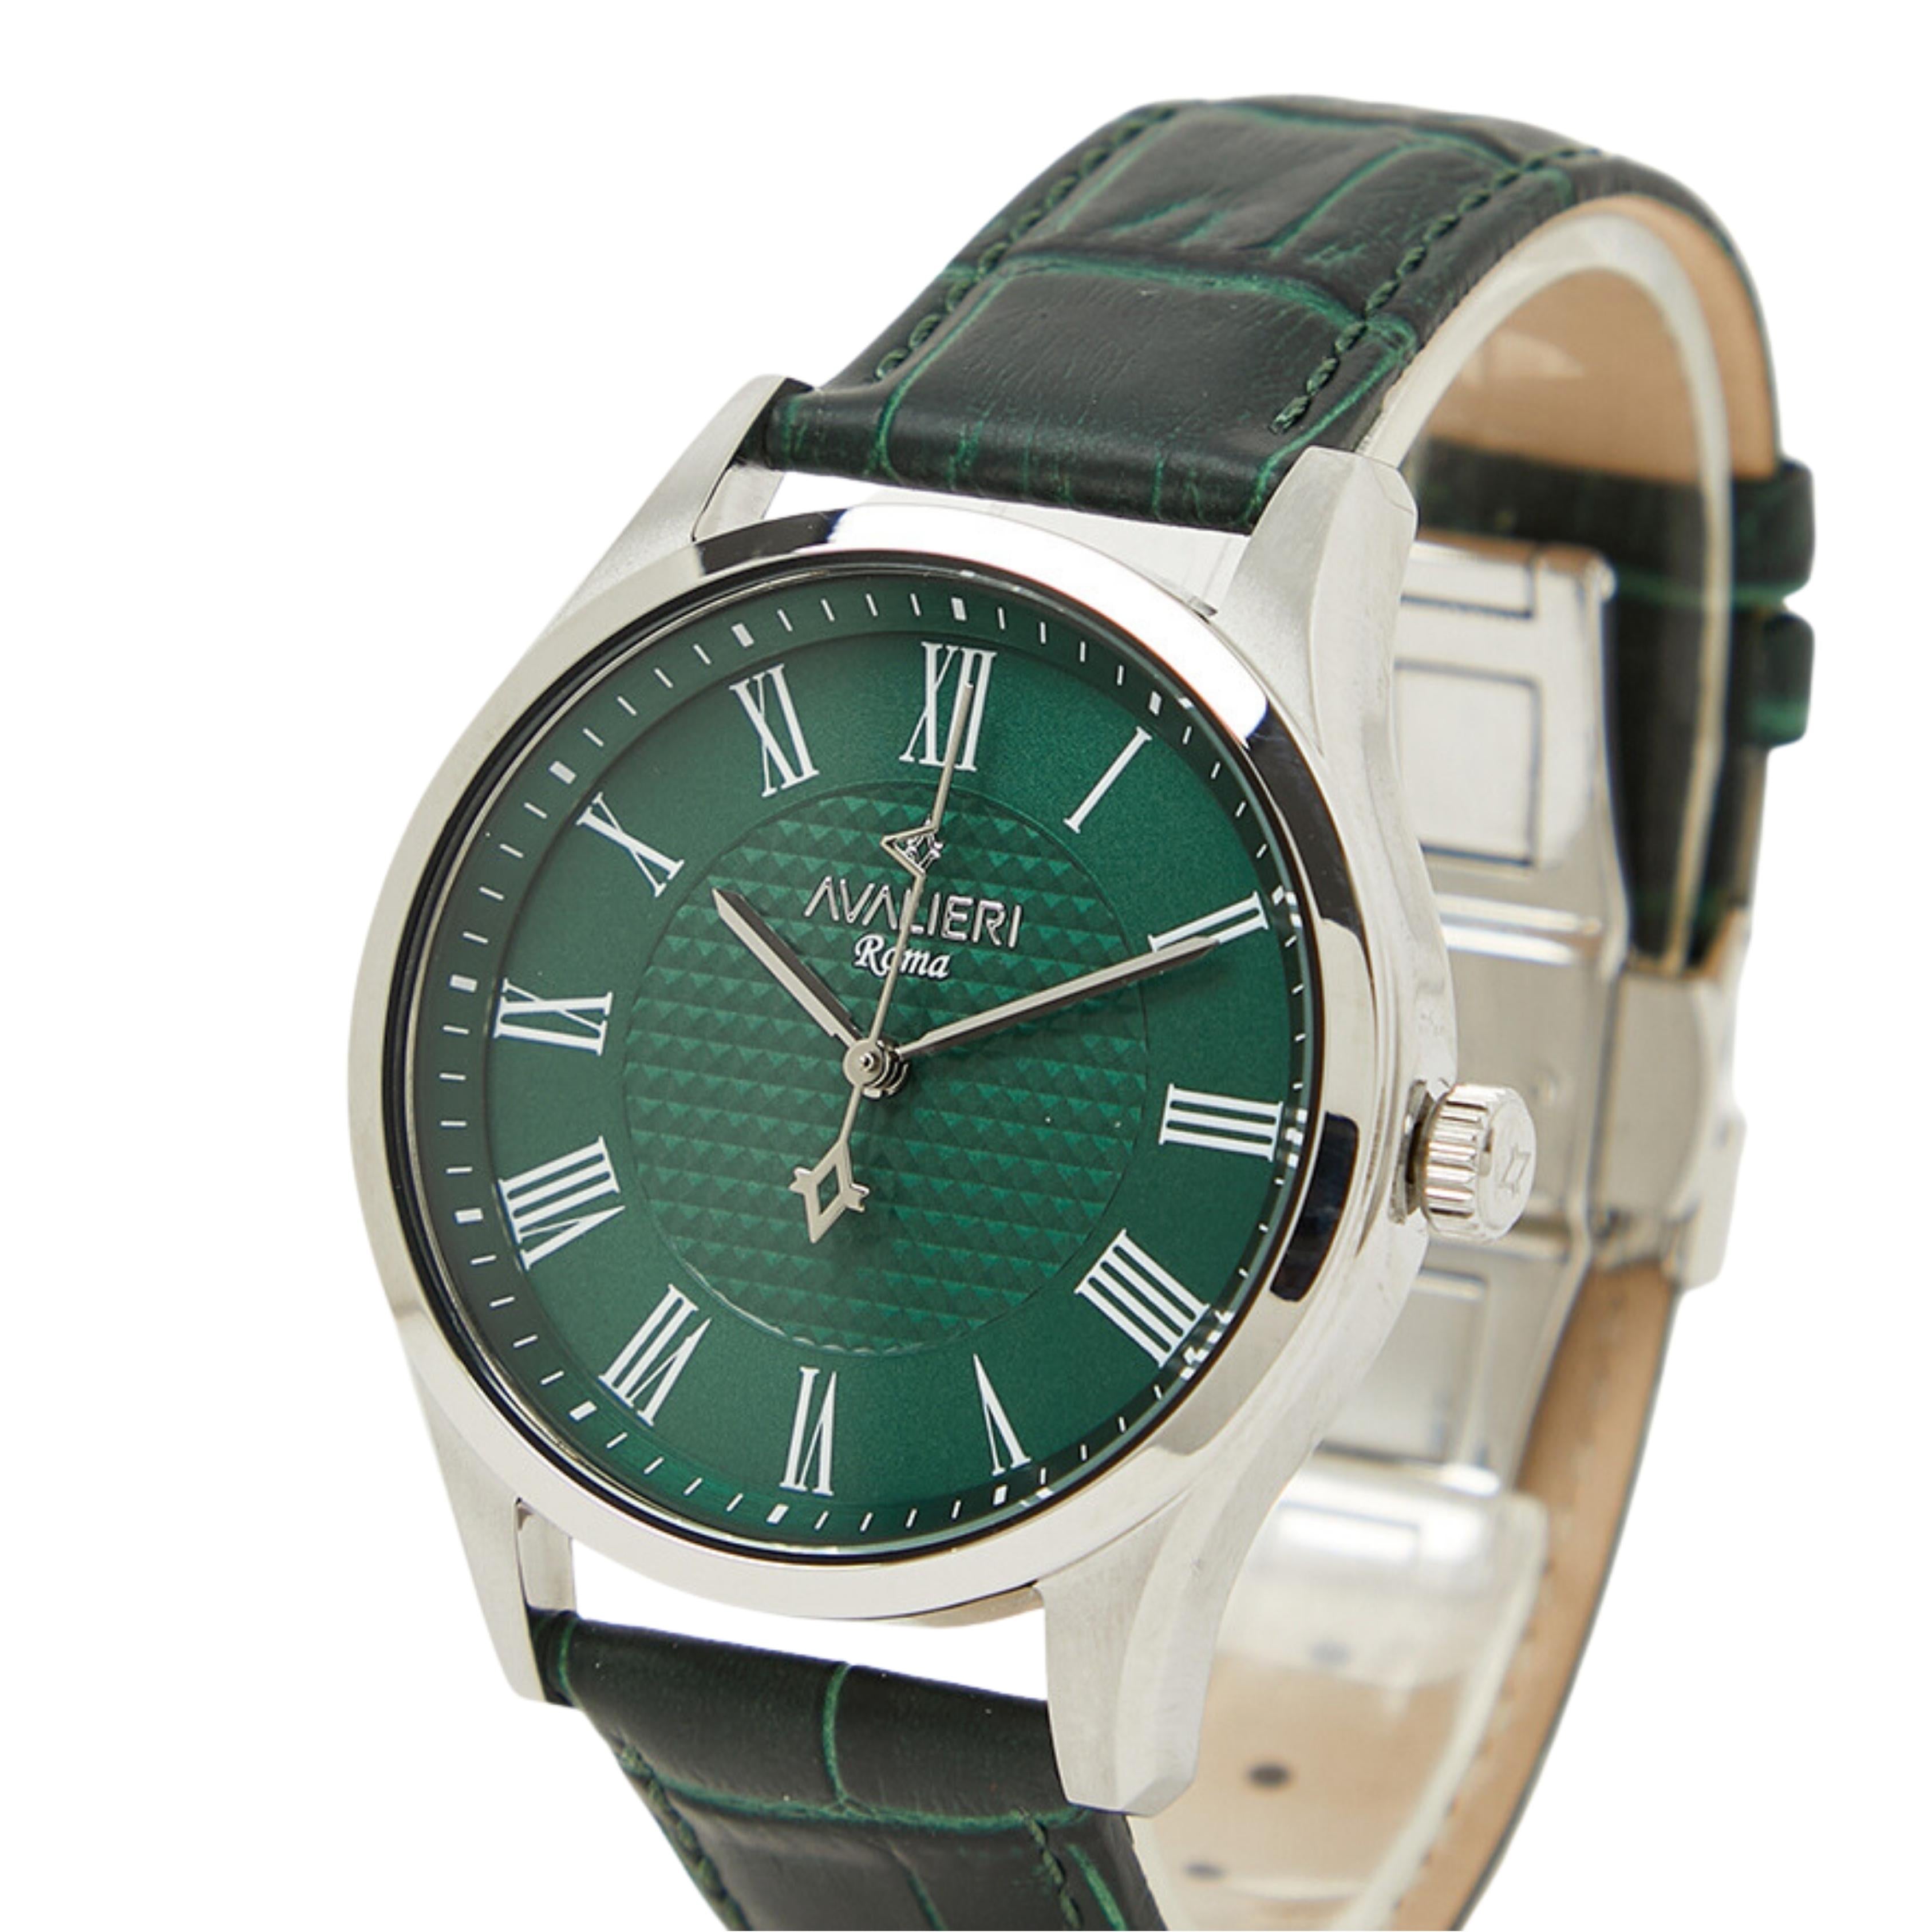 Avalieri Men's Quartz Green Dial Watch - AV-2619B